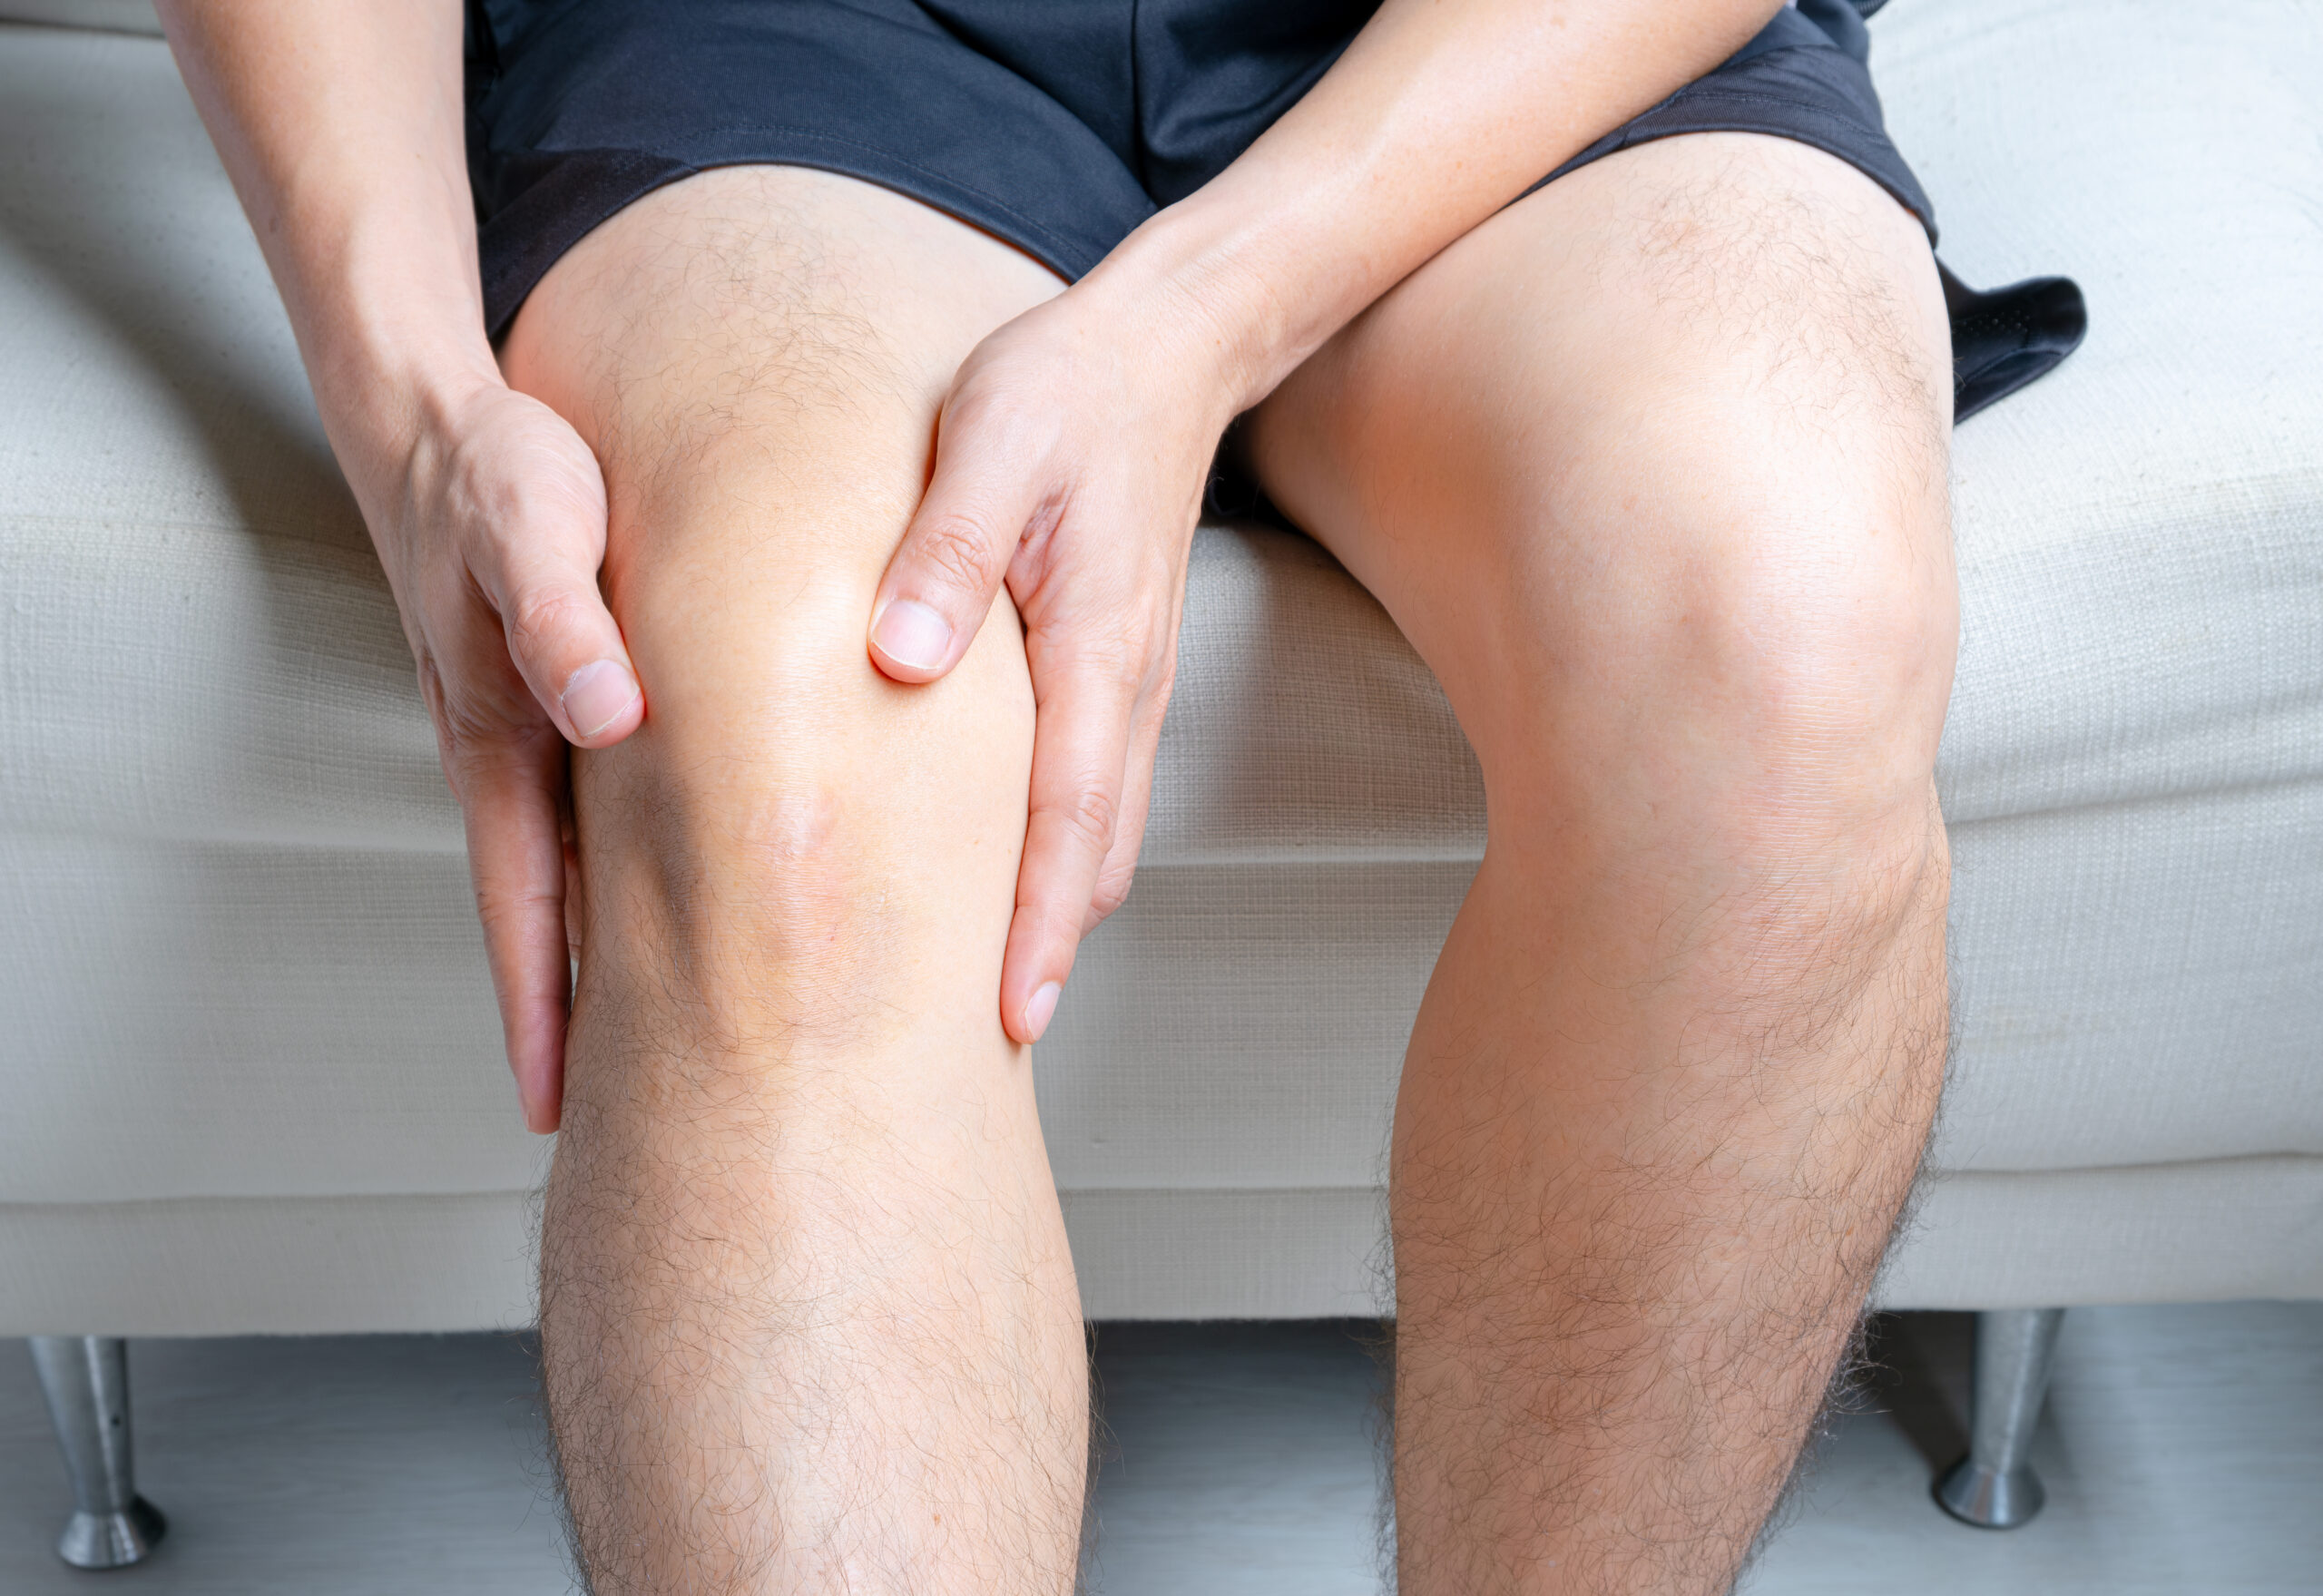 Sehnenscheidenentzündung am Knie infolge von Überlastung beim Laufen oder anderen Aktivitäten. Nahrungsergänzungsmittel Laoli V Sehne liefert wichtige Nährstoffe für das Bindegewebe